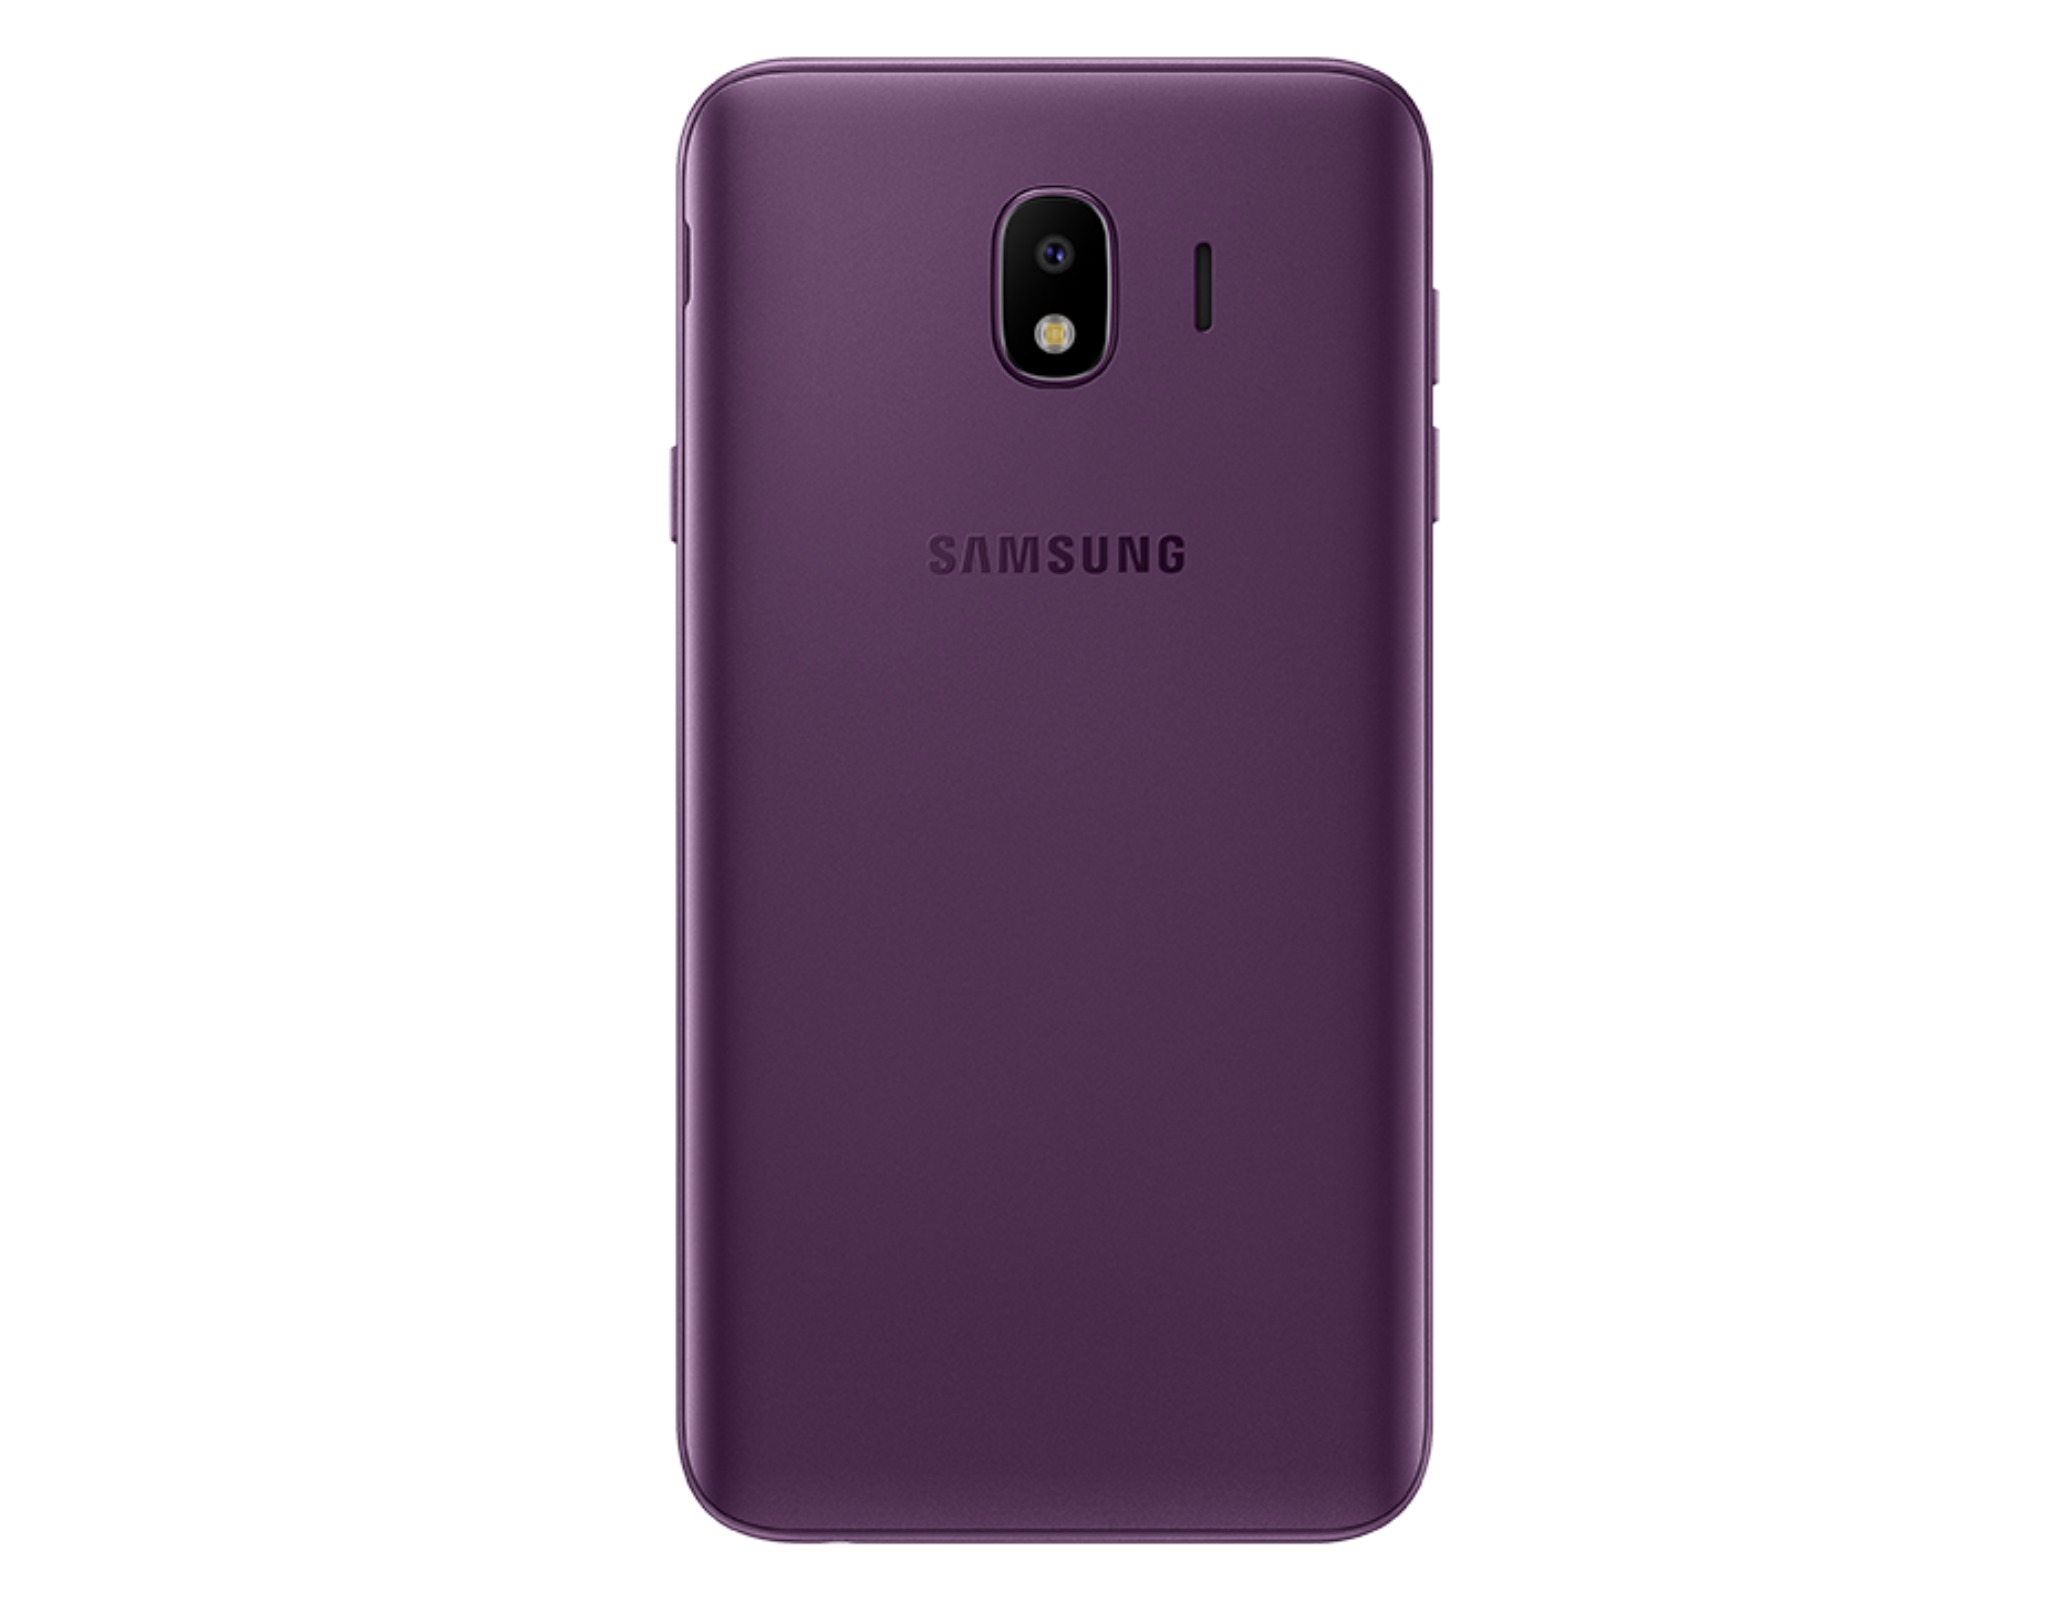 Samsung giới thiệu
Galaxy
J4 tại Việt Nam, camera chụp tối hiệu quả, màn hình lớn